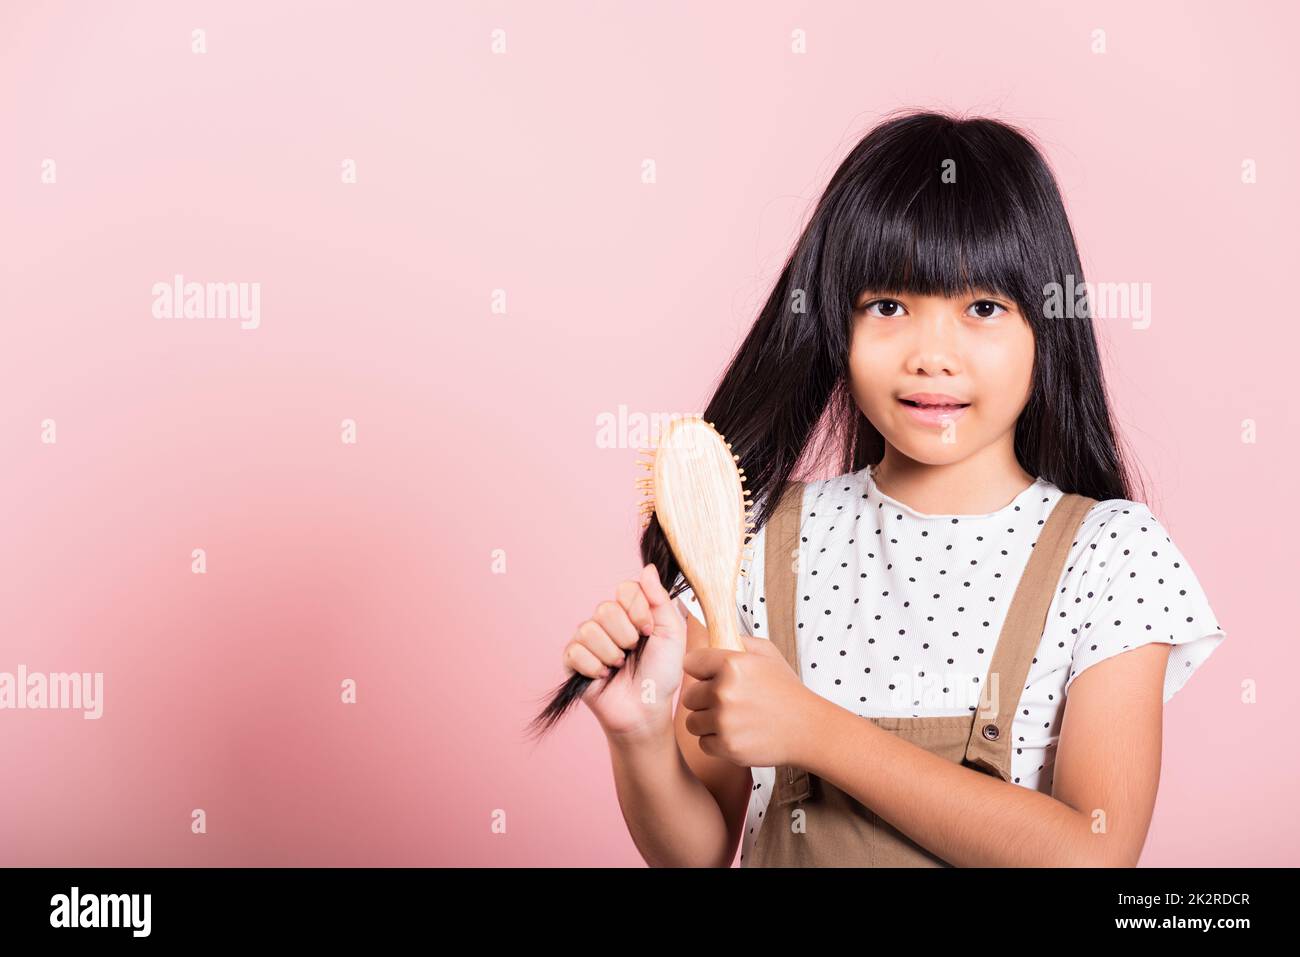 Asiatische kleine Kind 10 Jahre alt halten Kamm Bürsten sie widerspenstig sie berühren ihre lange schwarze Haare Stockfoto